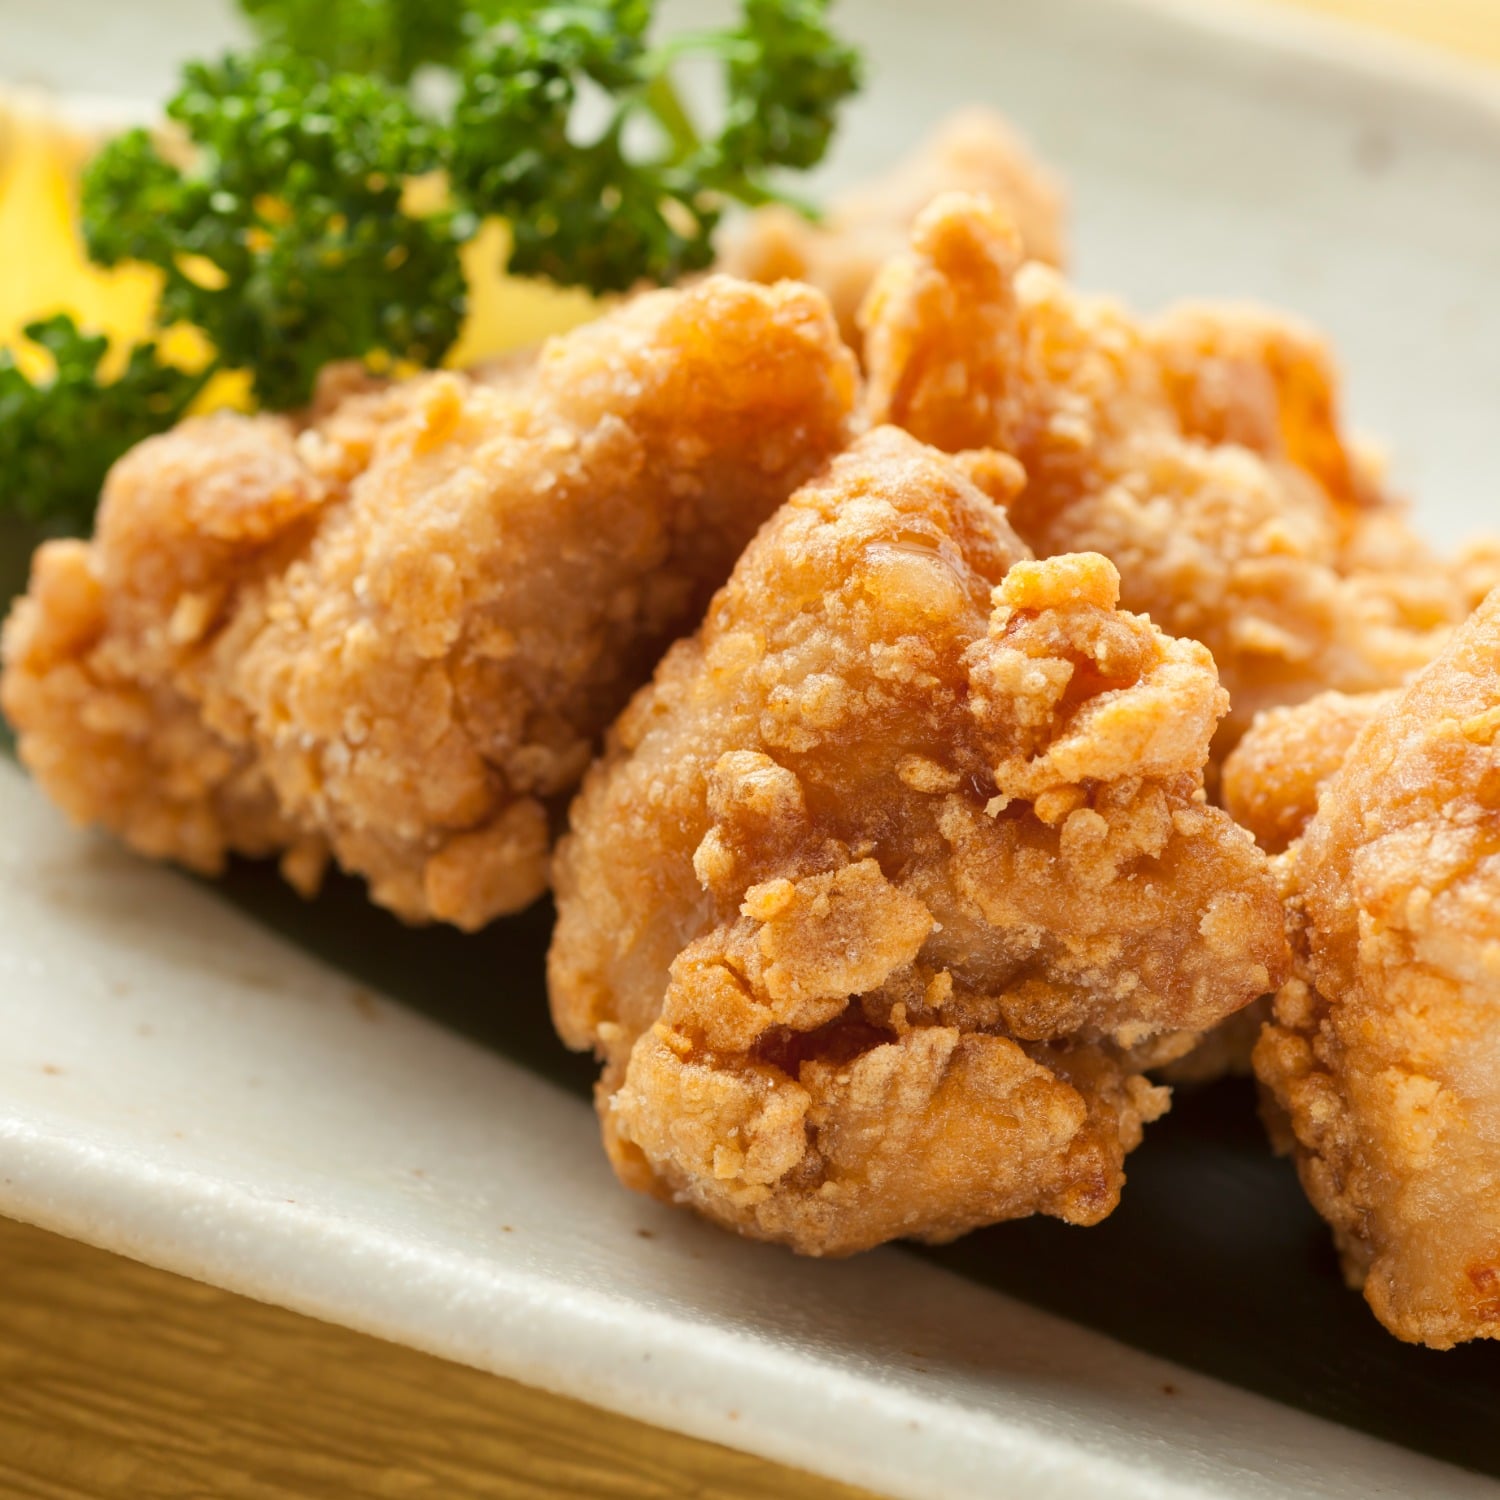 グルメ 食品 ベルメゾン 宮崎県産鶏のからあげセット 900g 【冷凍】